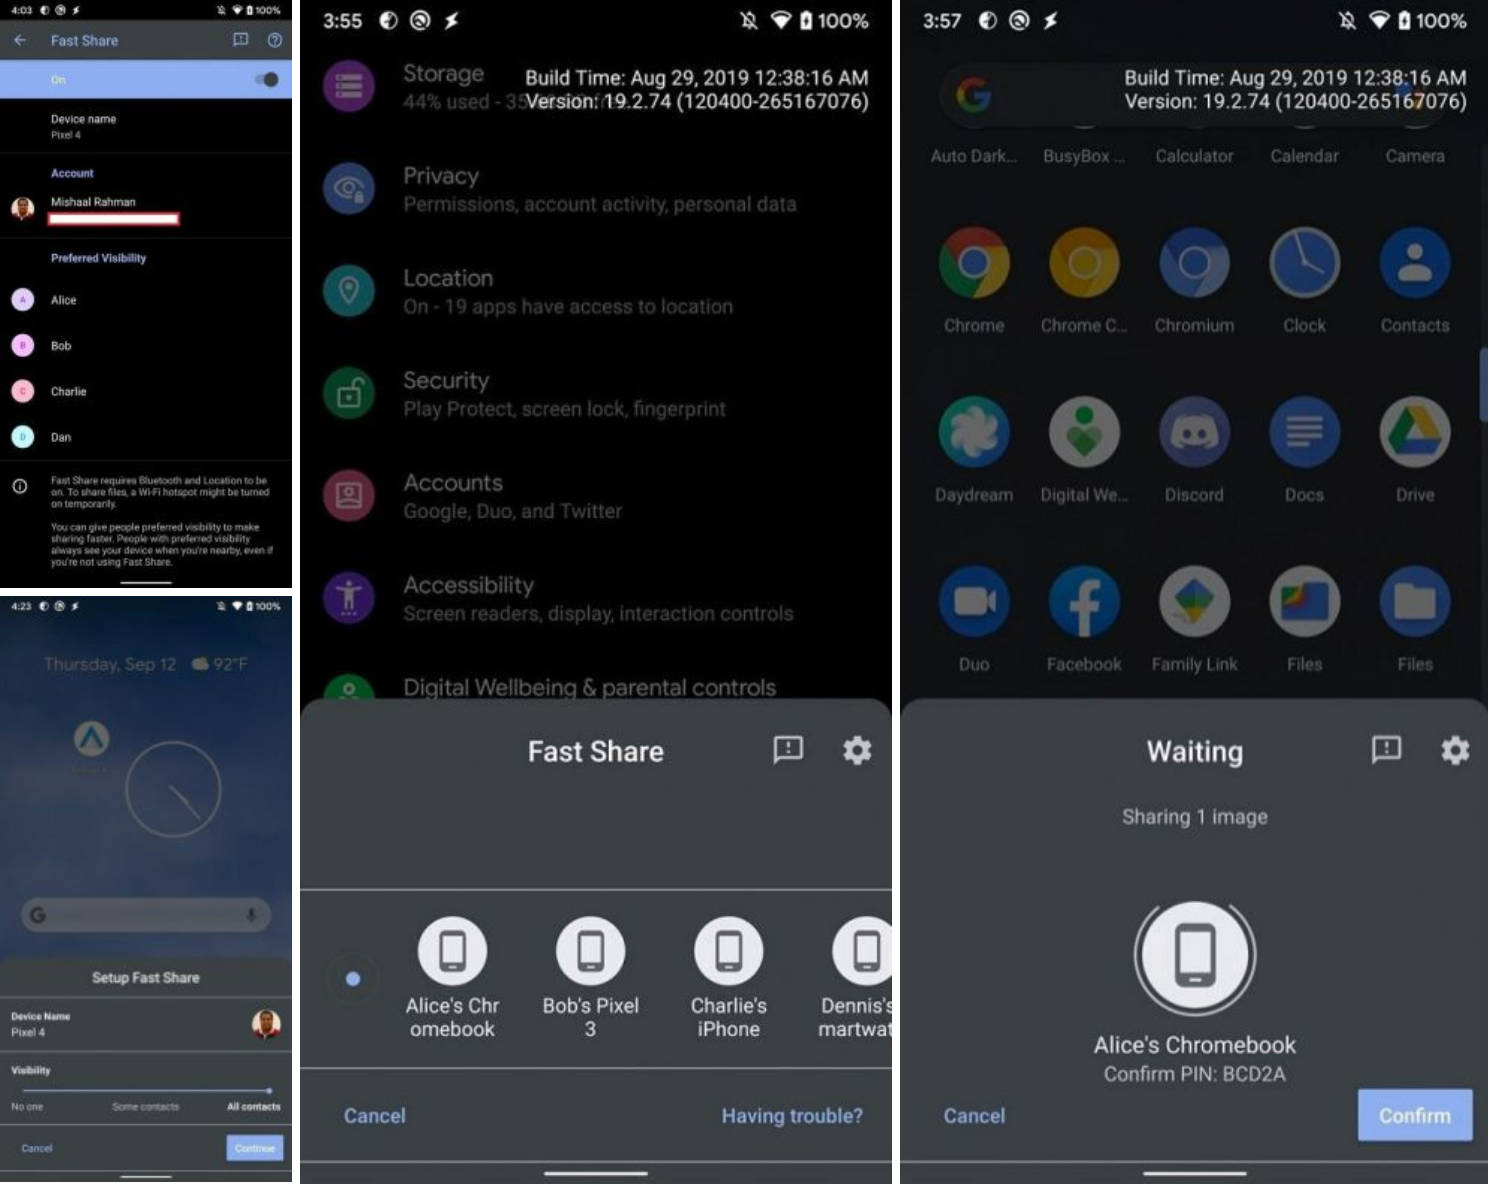 Google Pixel 4 Fast Share z Android 10 pest udostępnianie plików jak AirDrop kiedy